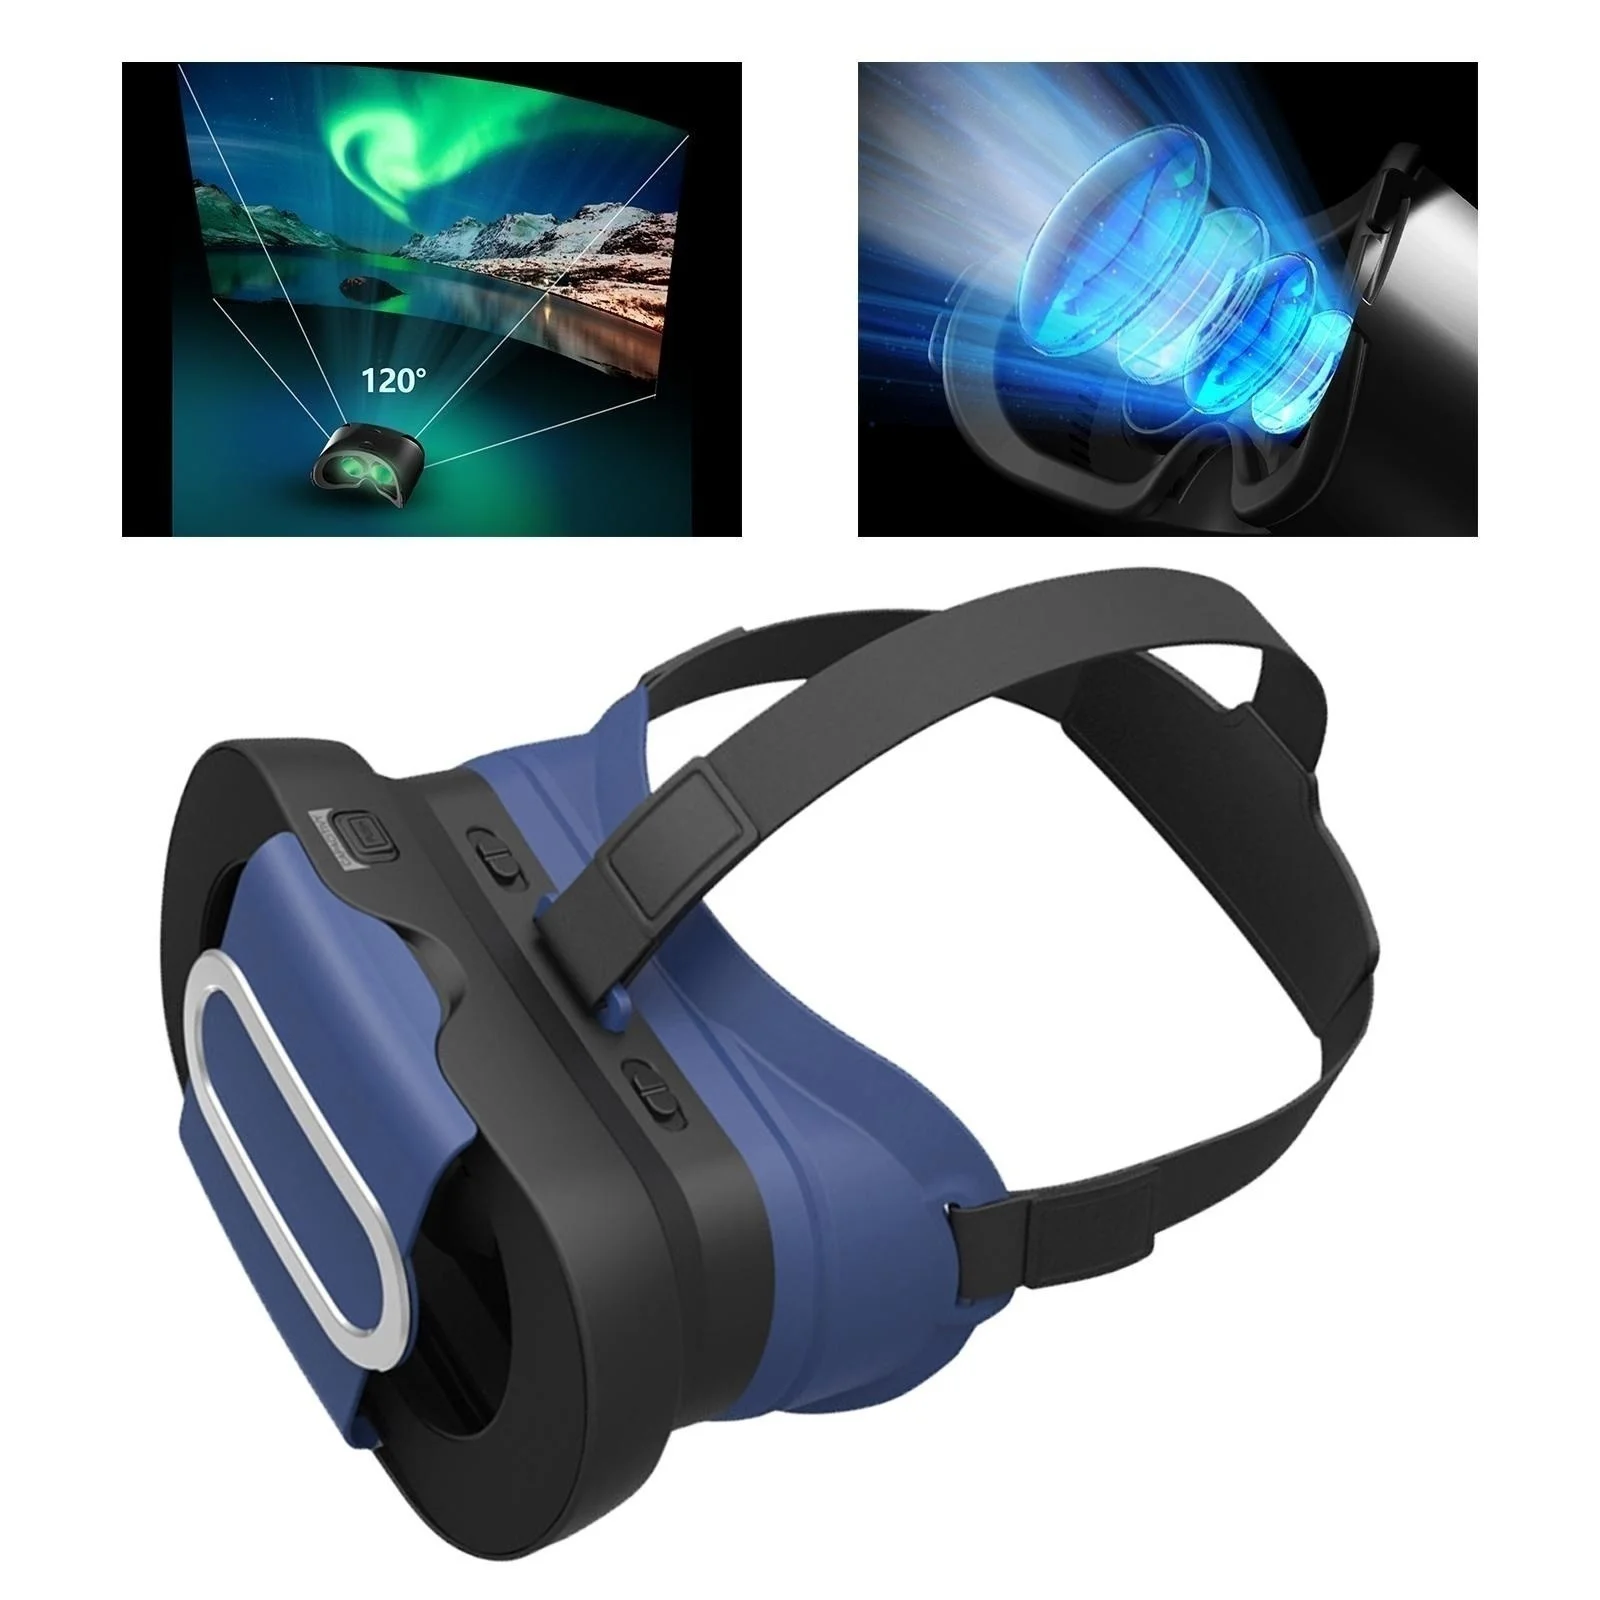 

Складные очки виртуальной реальности с регулировкой расстояния между зрачками и защитой от сисветильник